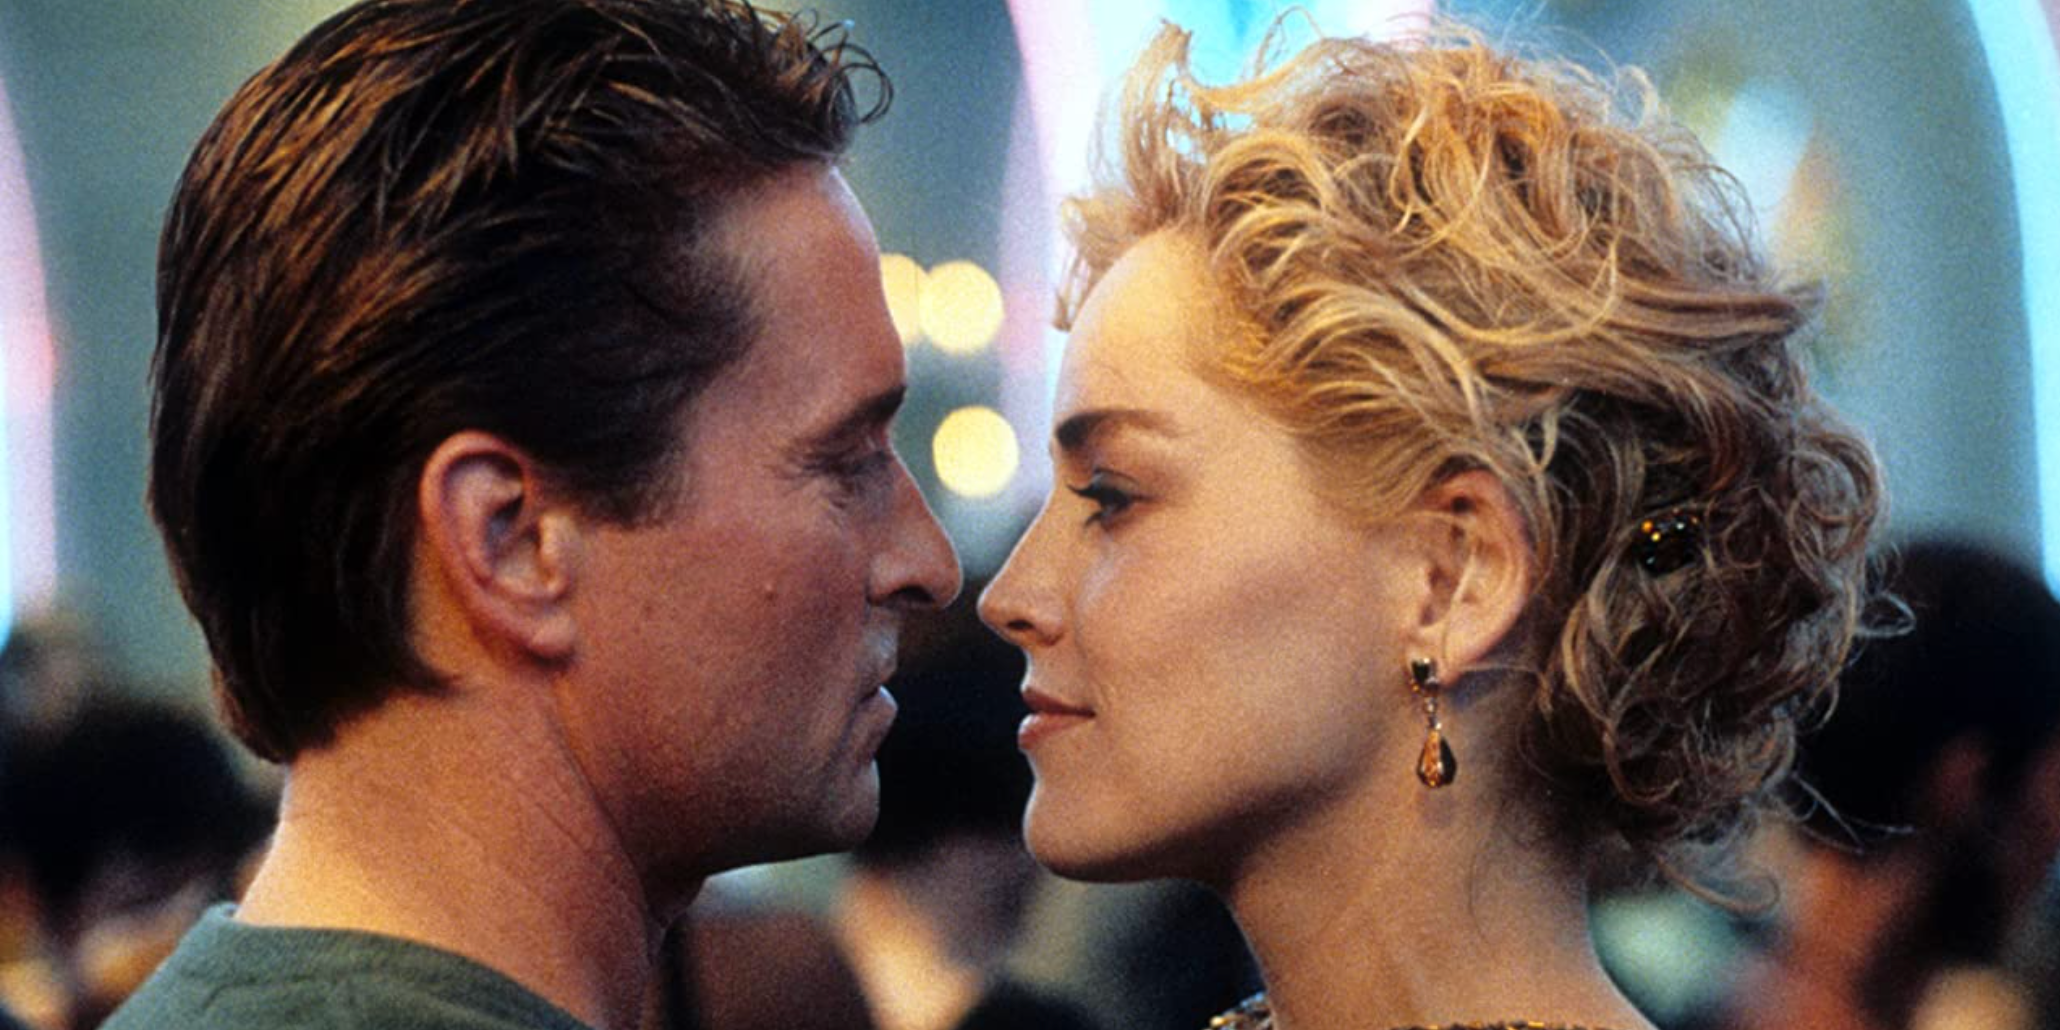 Michael Douglas e Sharon Stone como Nick e Catherine prestes a se beijar em Basic Instinct.